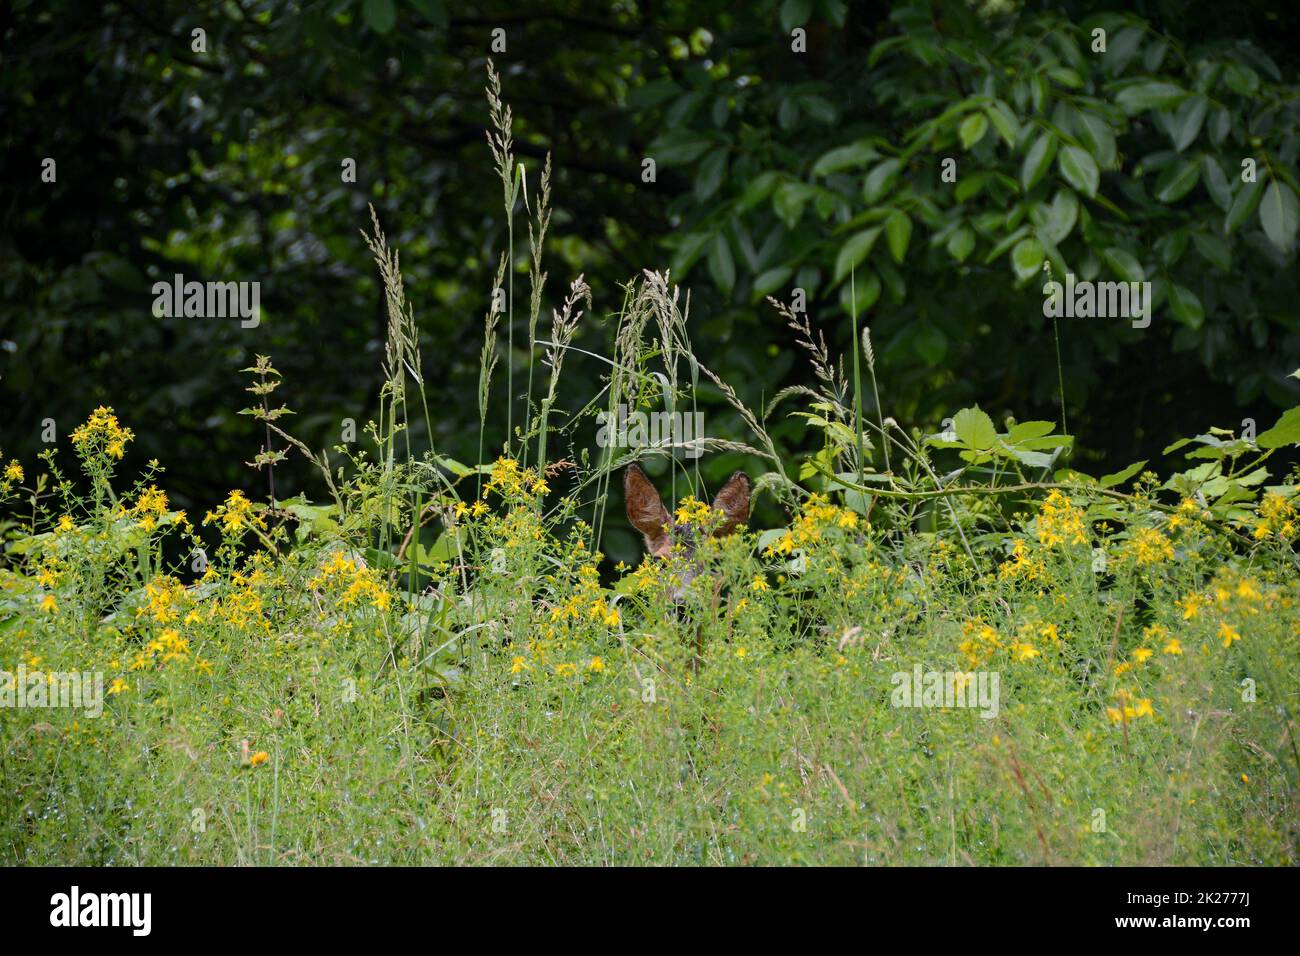 A deer hides behind tall grass Stock Photo